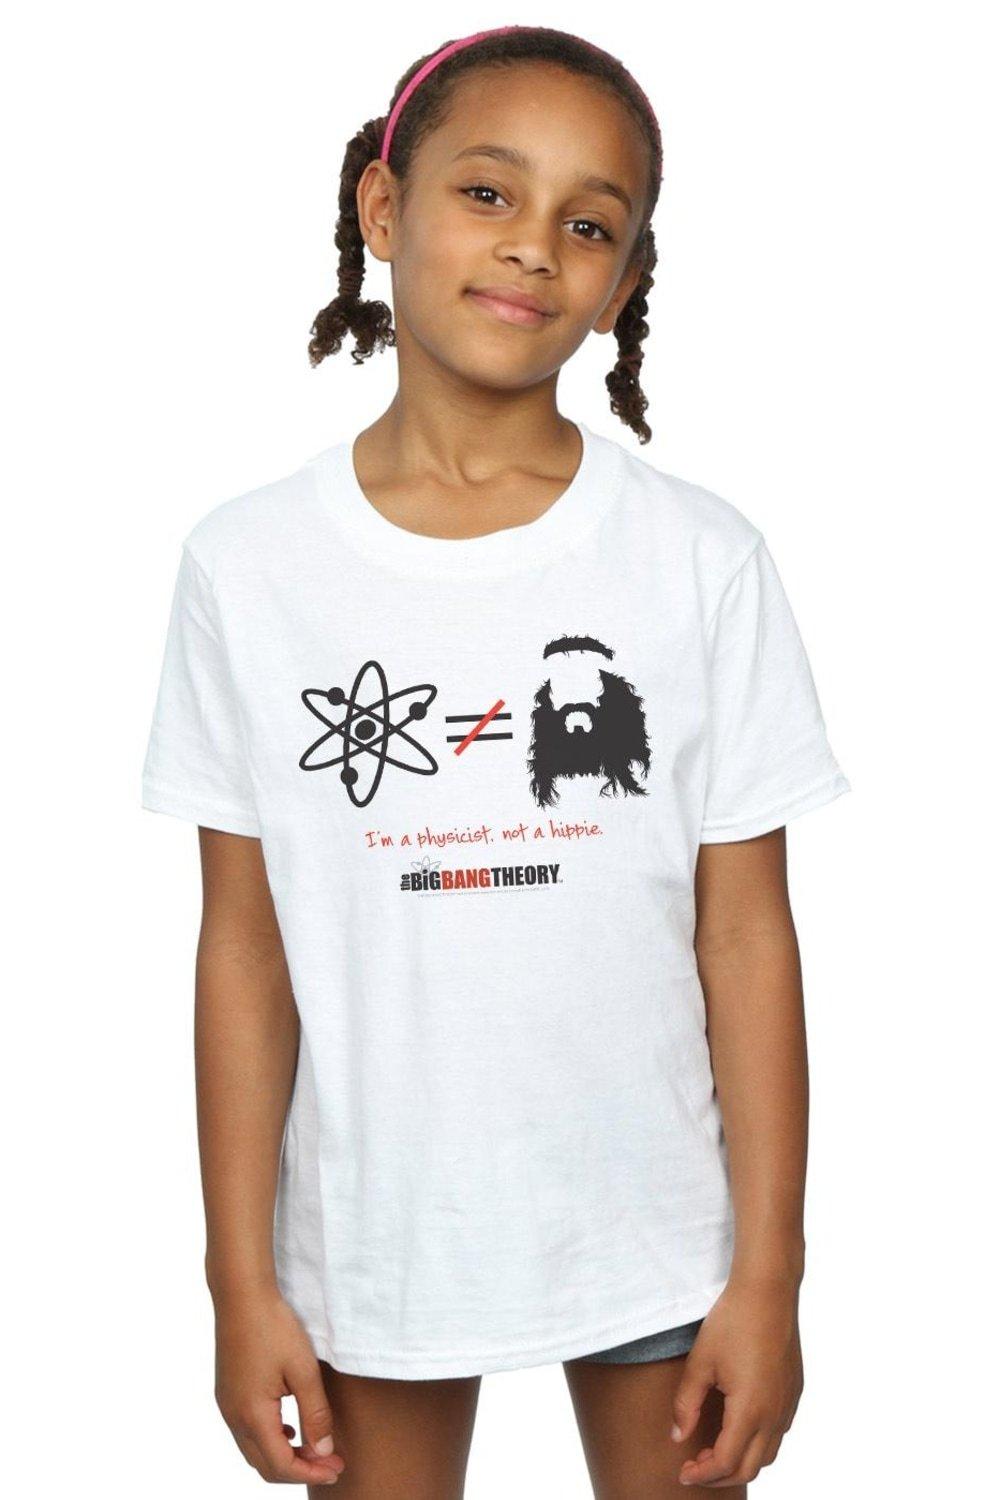 I Am A Physicist Not A Hippie Cotton T-Shirt